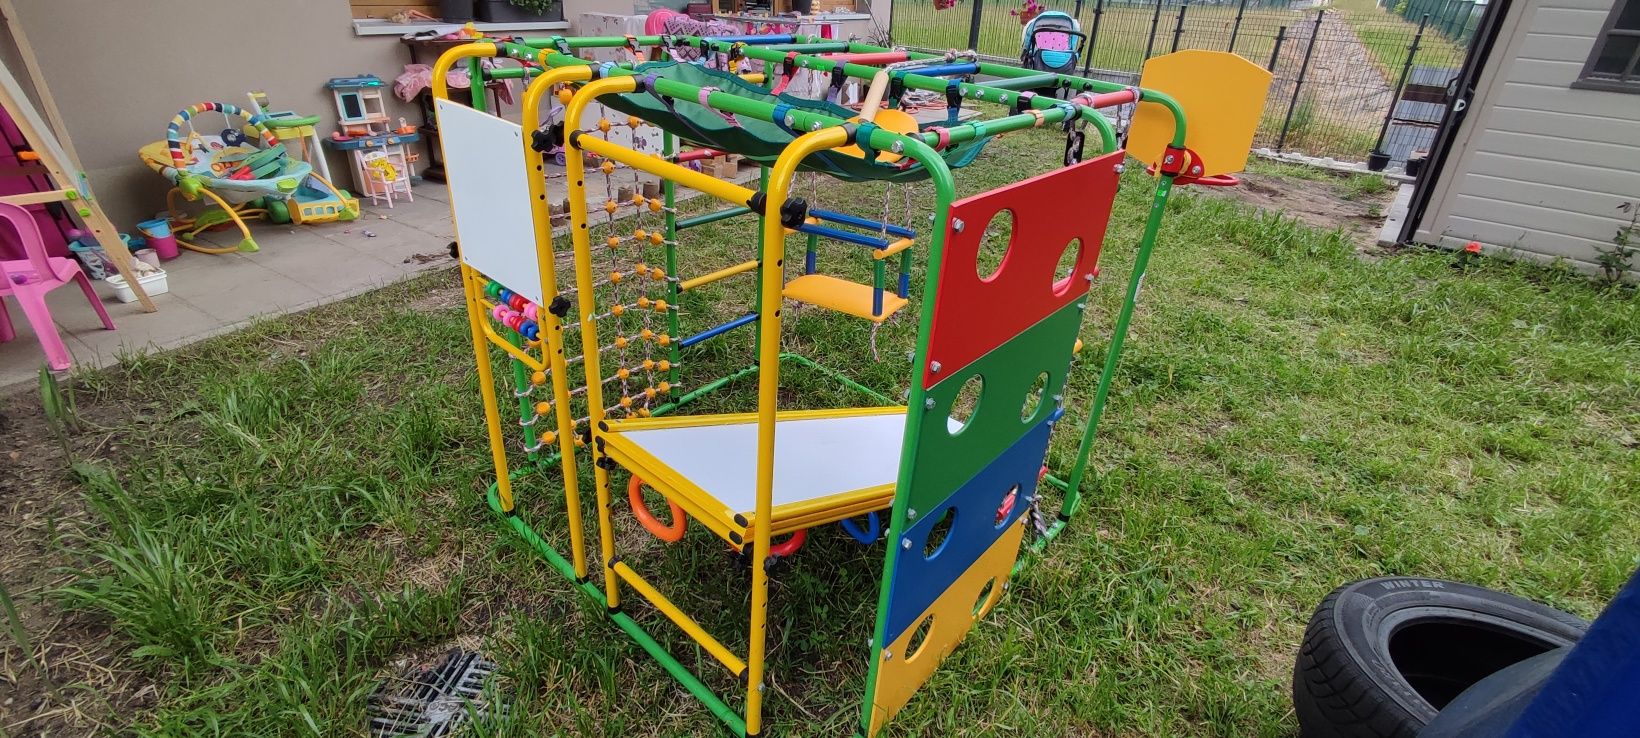 Plac zabaw (kompleks) domowy, ogrodowy dla dzieci